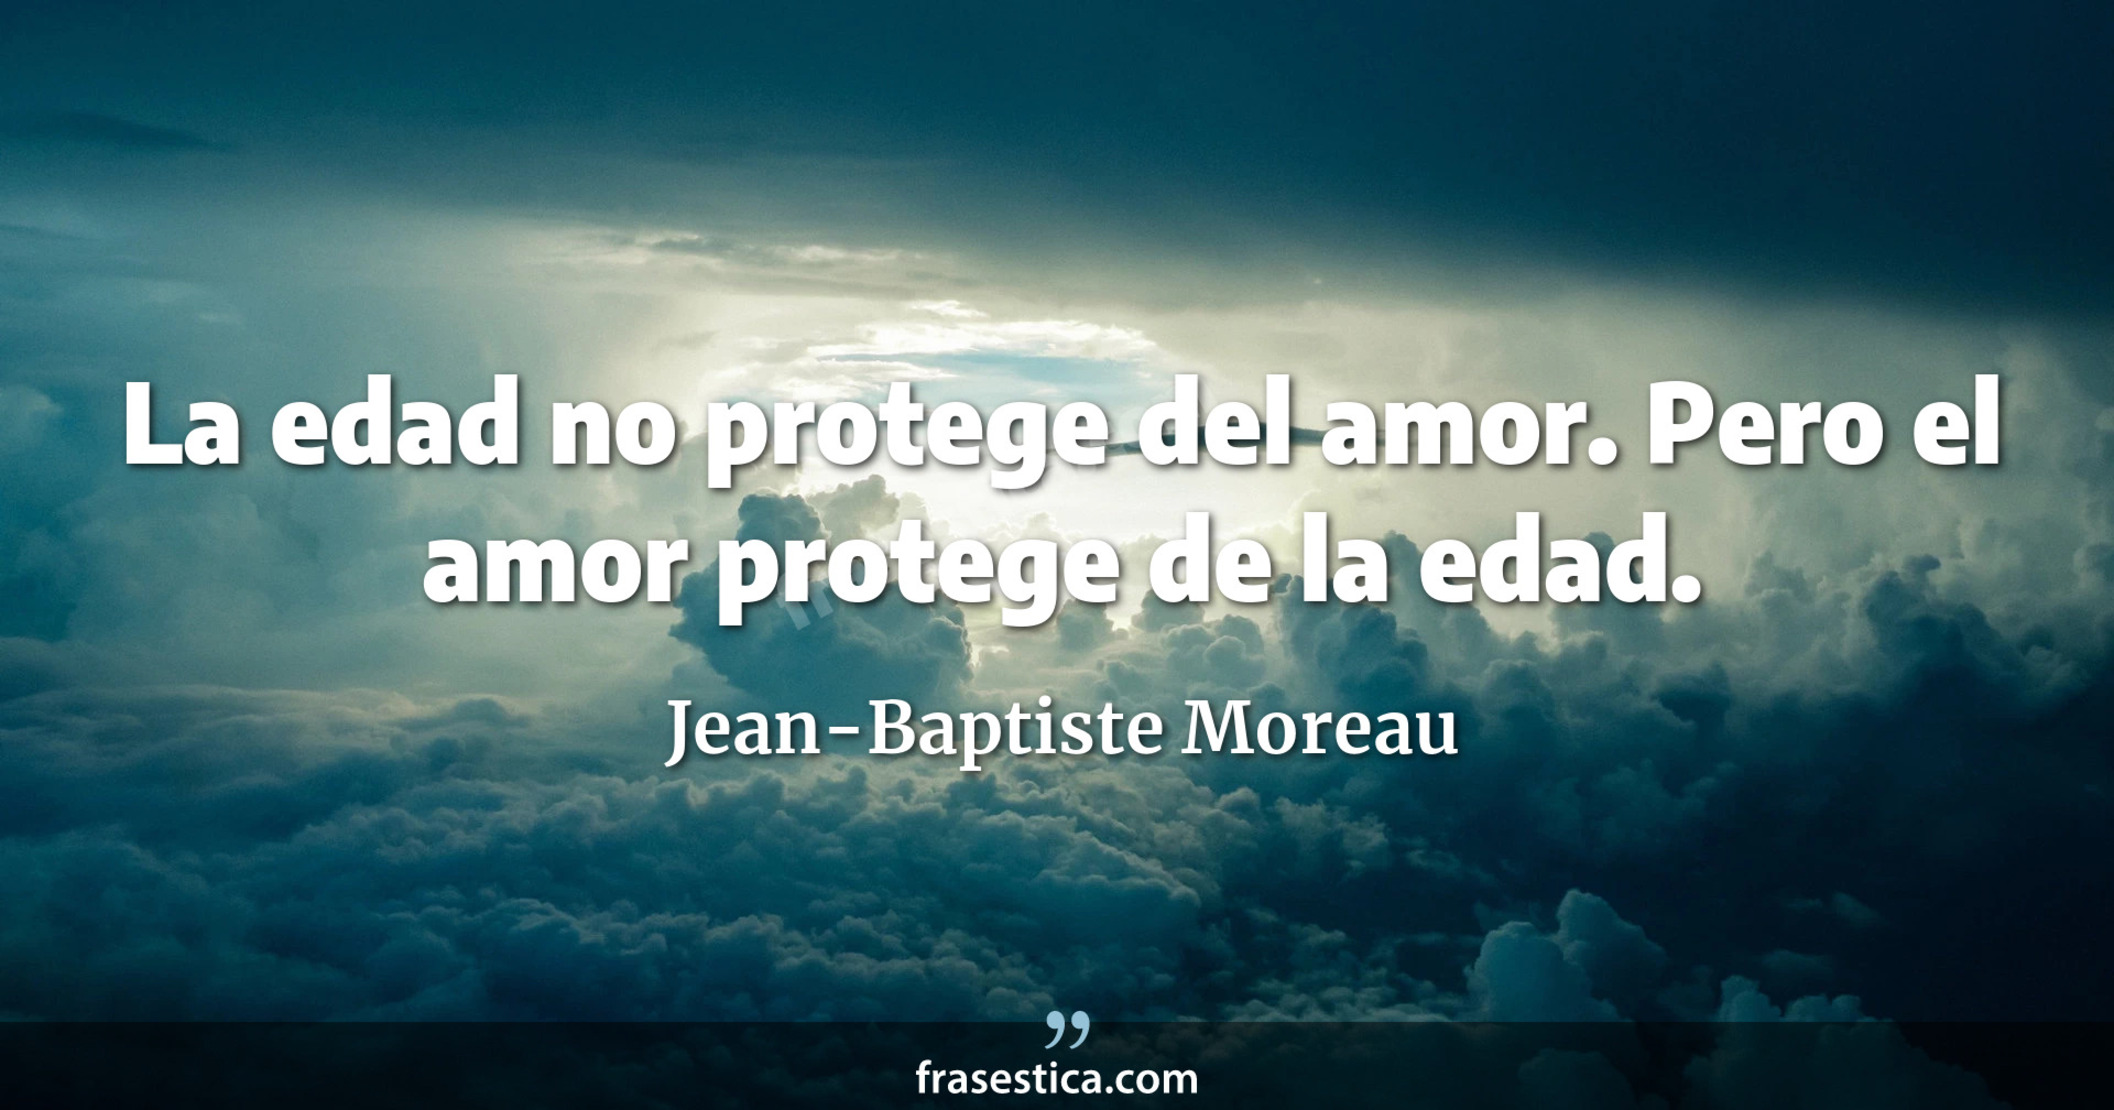 La edad no protege del amor. Pero el amor protege de la edad. - Jean-Baptiste Moreau